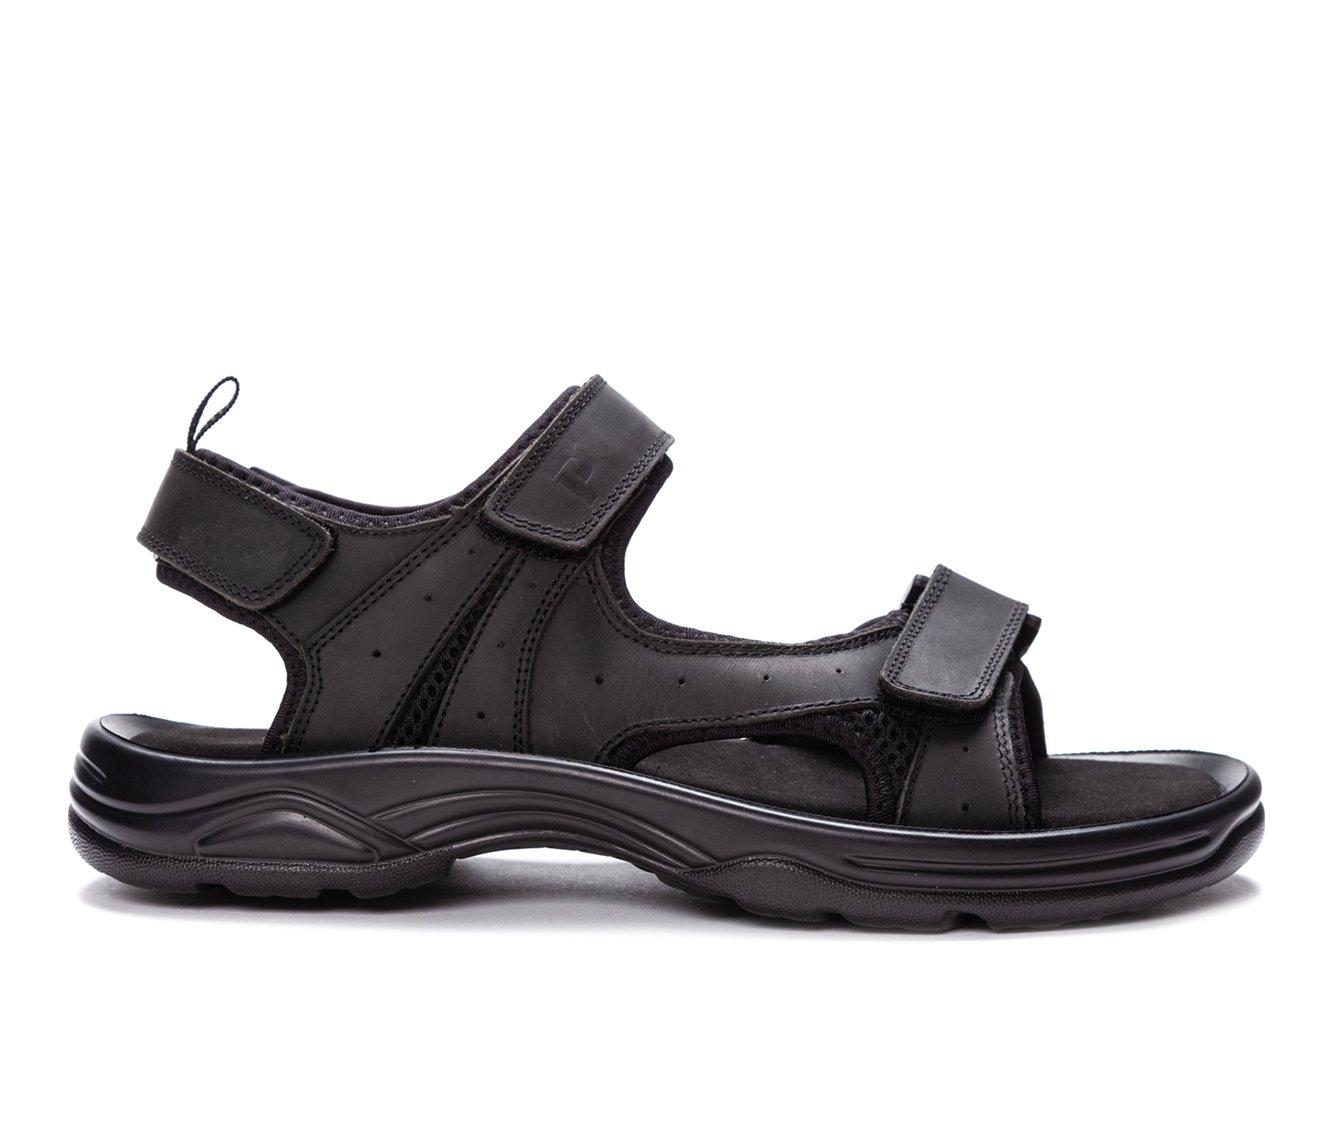 Men's Propet Daytona Outdoor Sandals